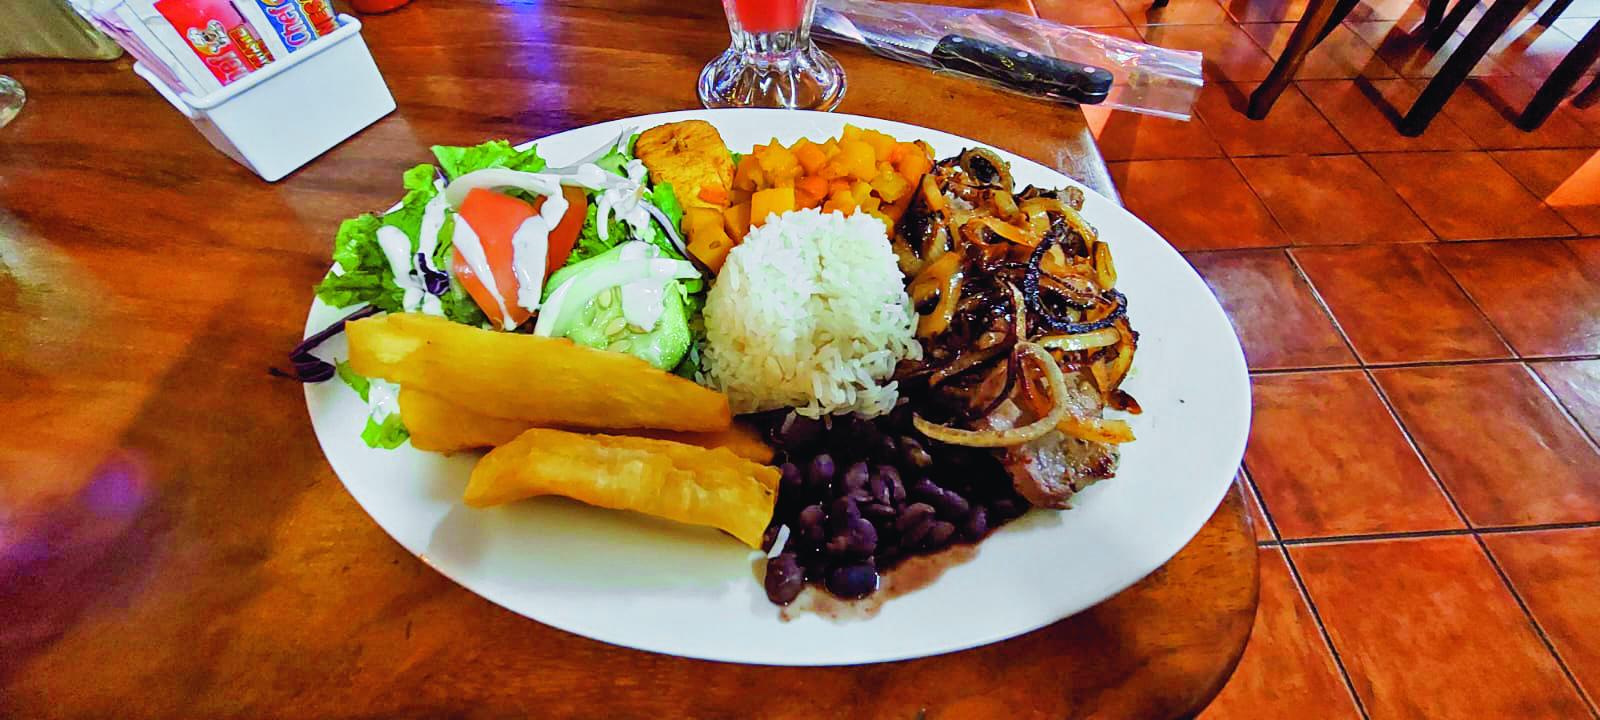 $!“Casado”, platillo típico de Costa Rica. Lleva carne con cebolla caramelizada, arroz, frijoles, plátano, camote y ensalada de lechuga, tomate y pepino.